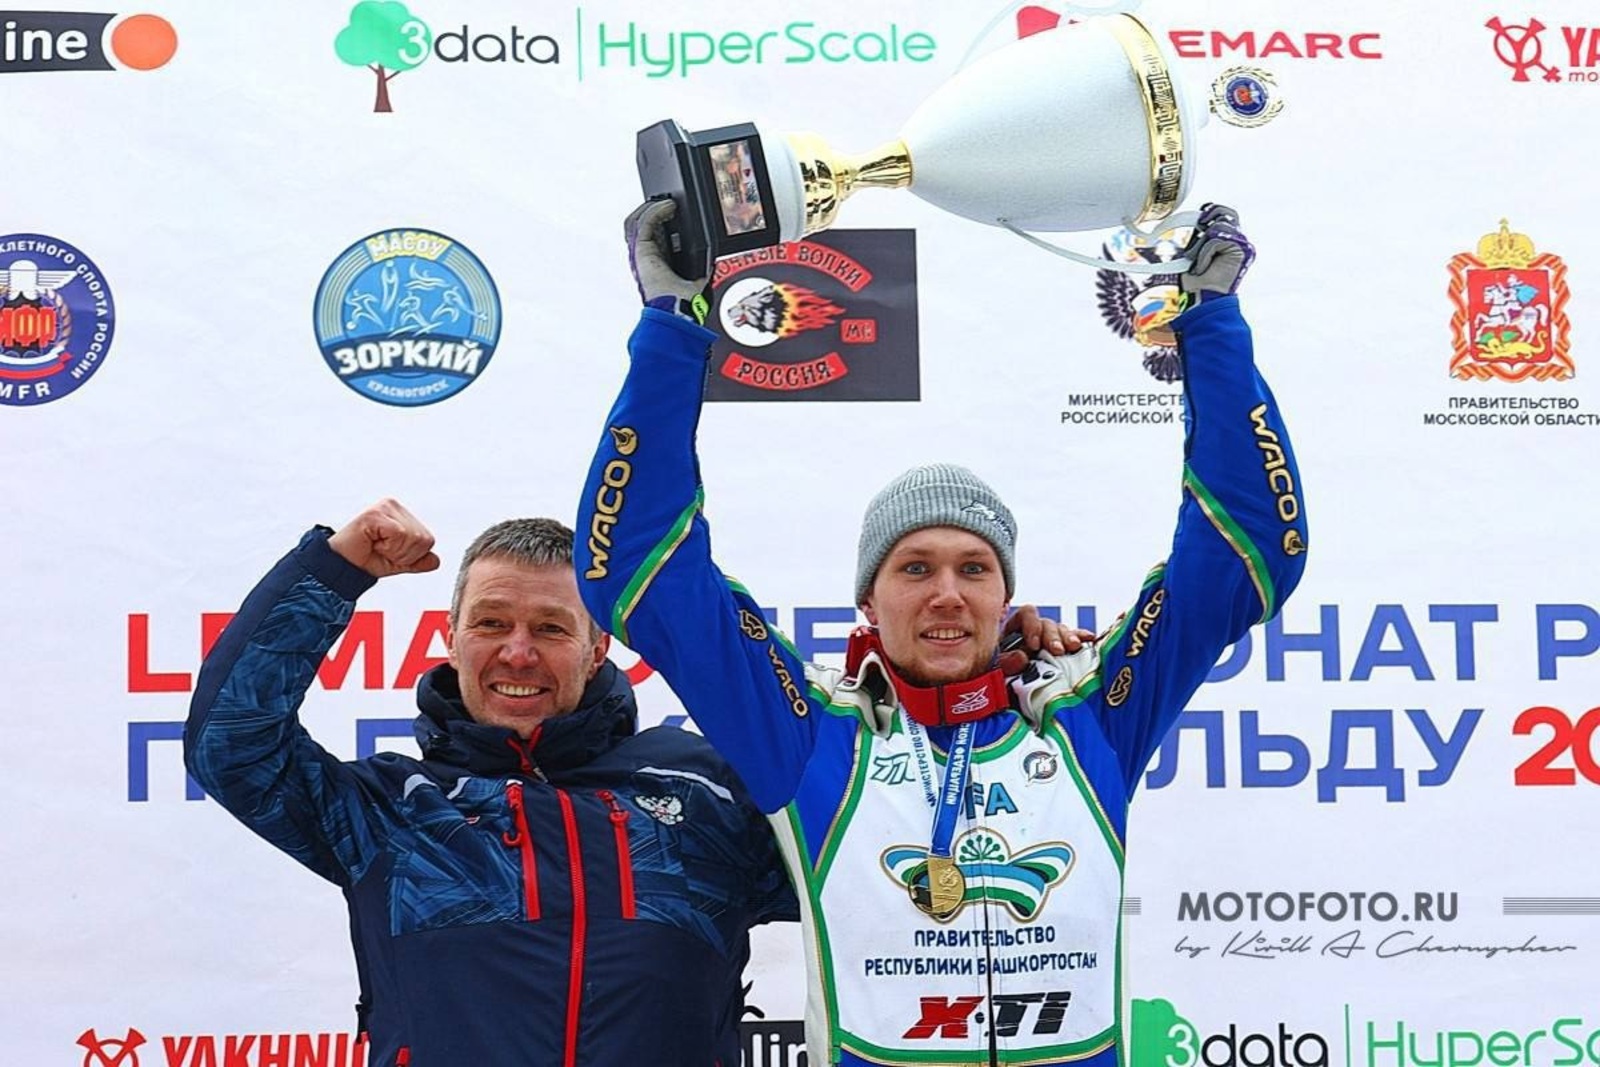 Спортсмен из Башкирии стал чемпионом страны по мотогонкам на льду